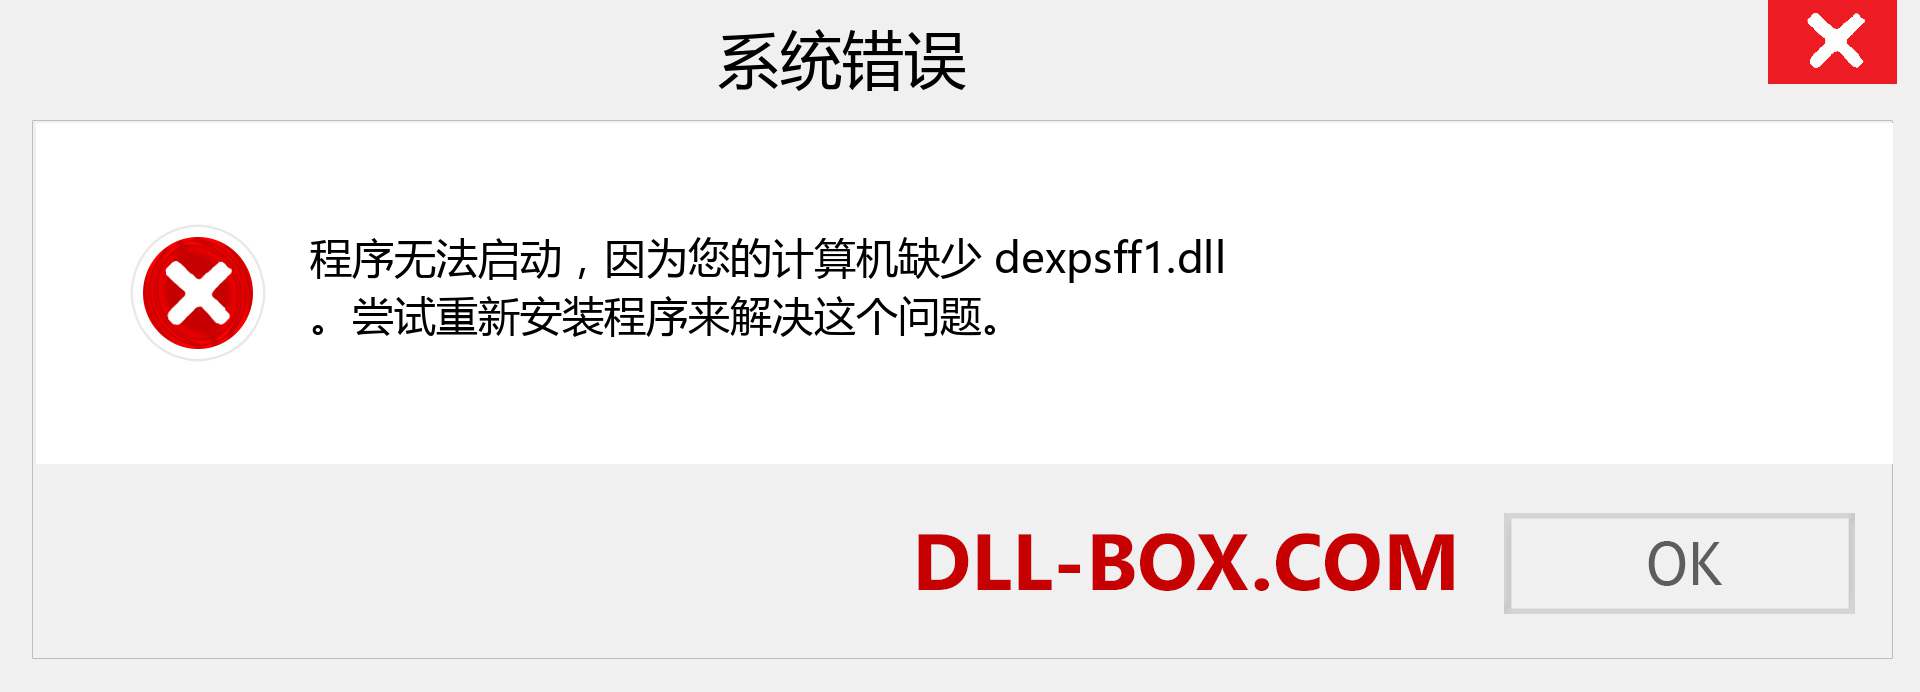 dexpsff1.dll 文件丢失？。 适用于 Windows 7、8、10 的下载 - 修复 Windows、照片、图像上的 dexpsff1 dll 丢失错误